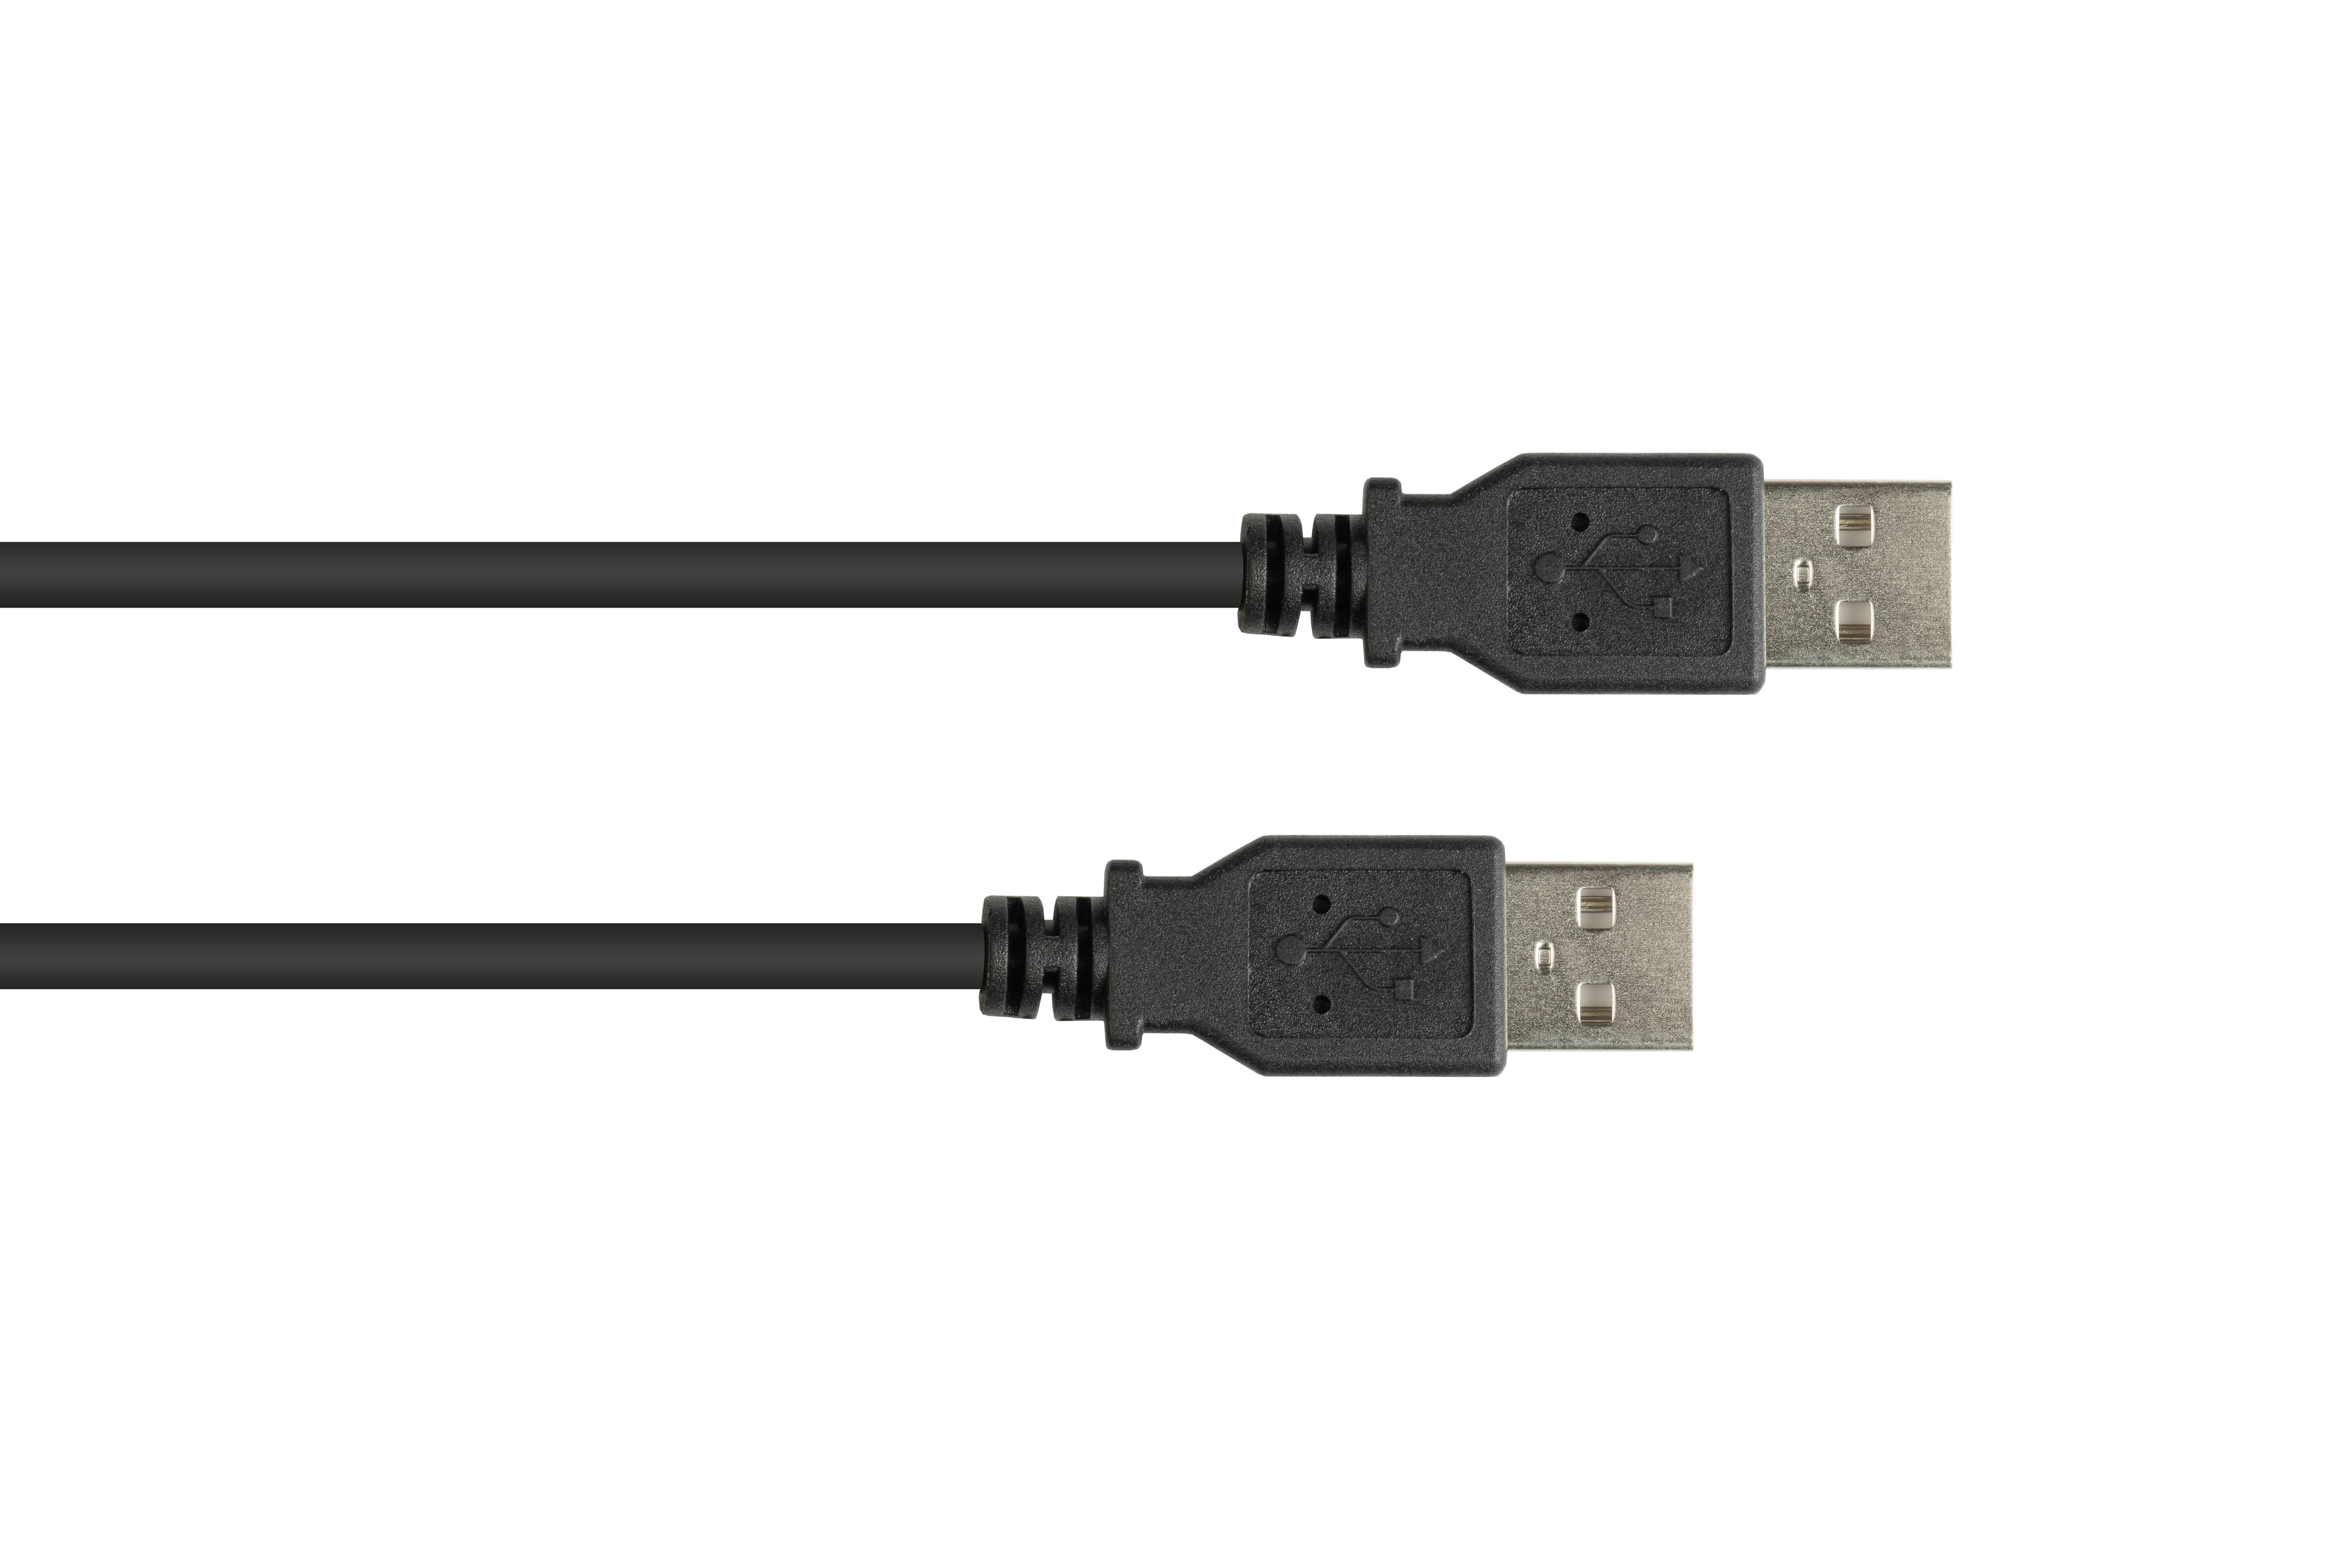 2.0 USB Anschlusskabel A KABELMEISTER Stecker Stecker schwarz A, an